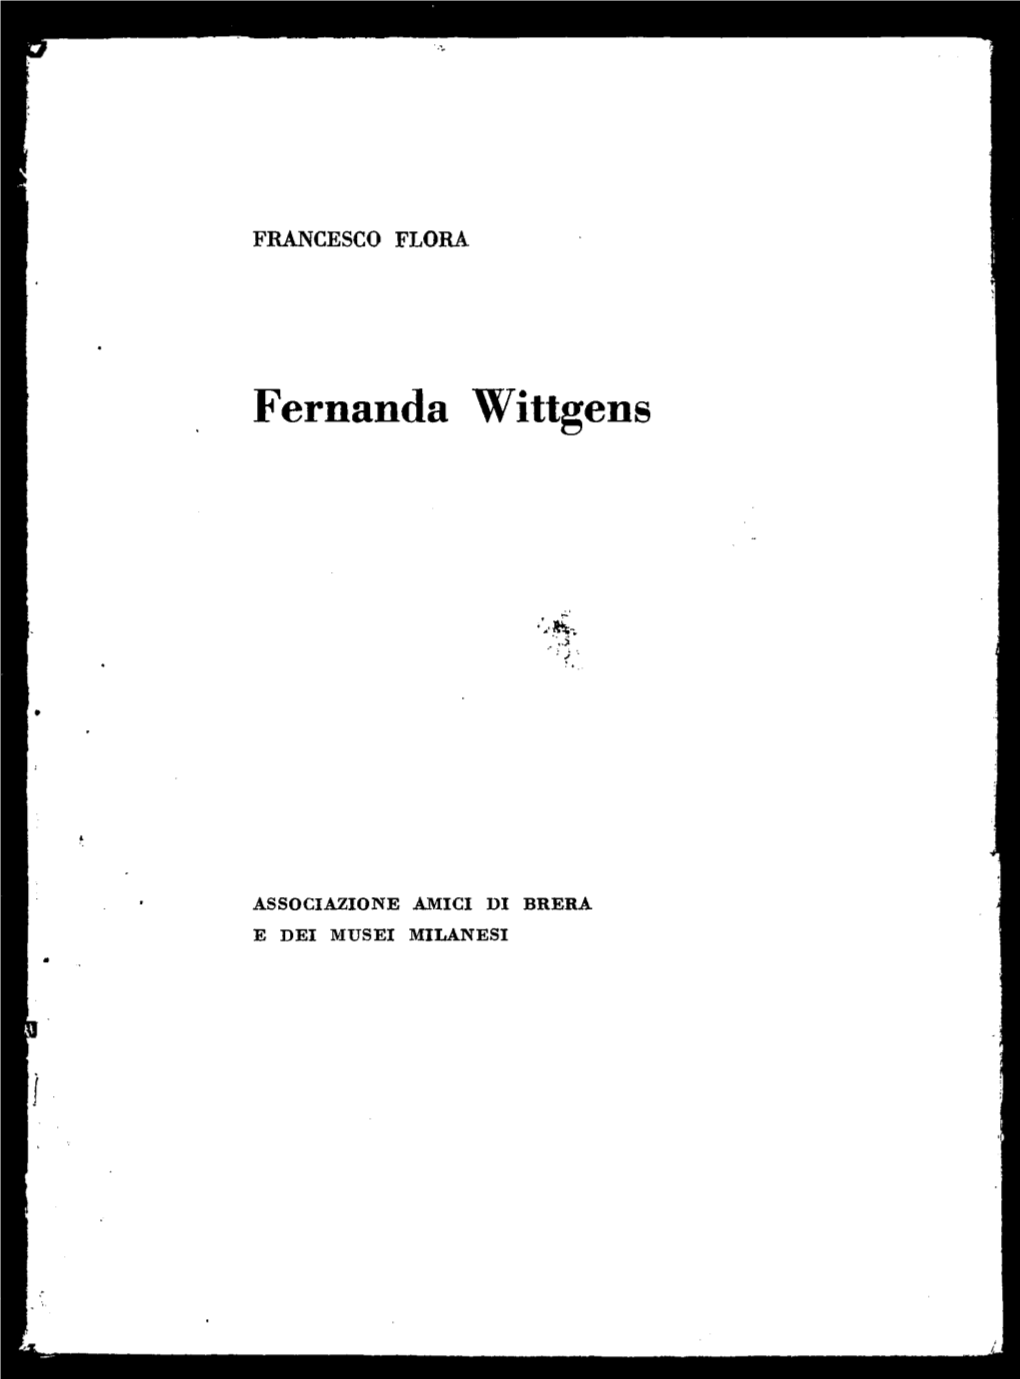 Fernanda Wittgens